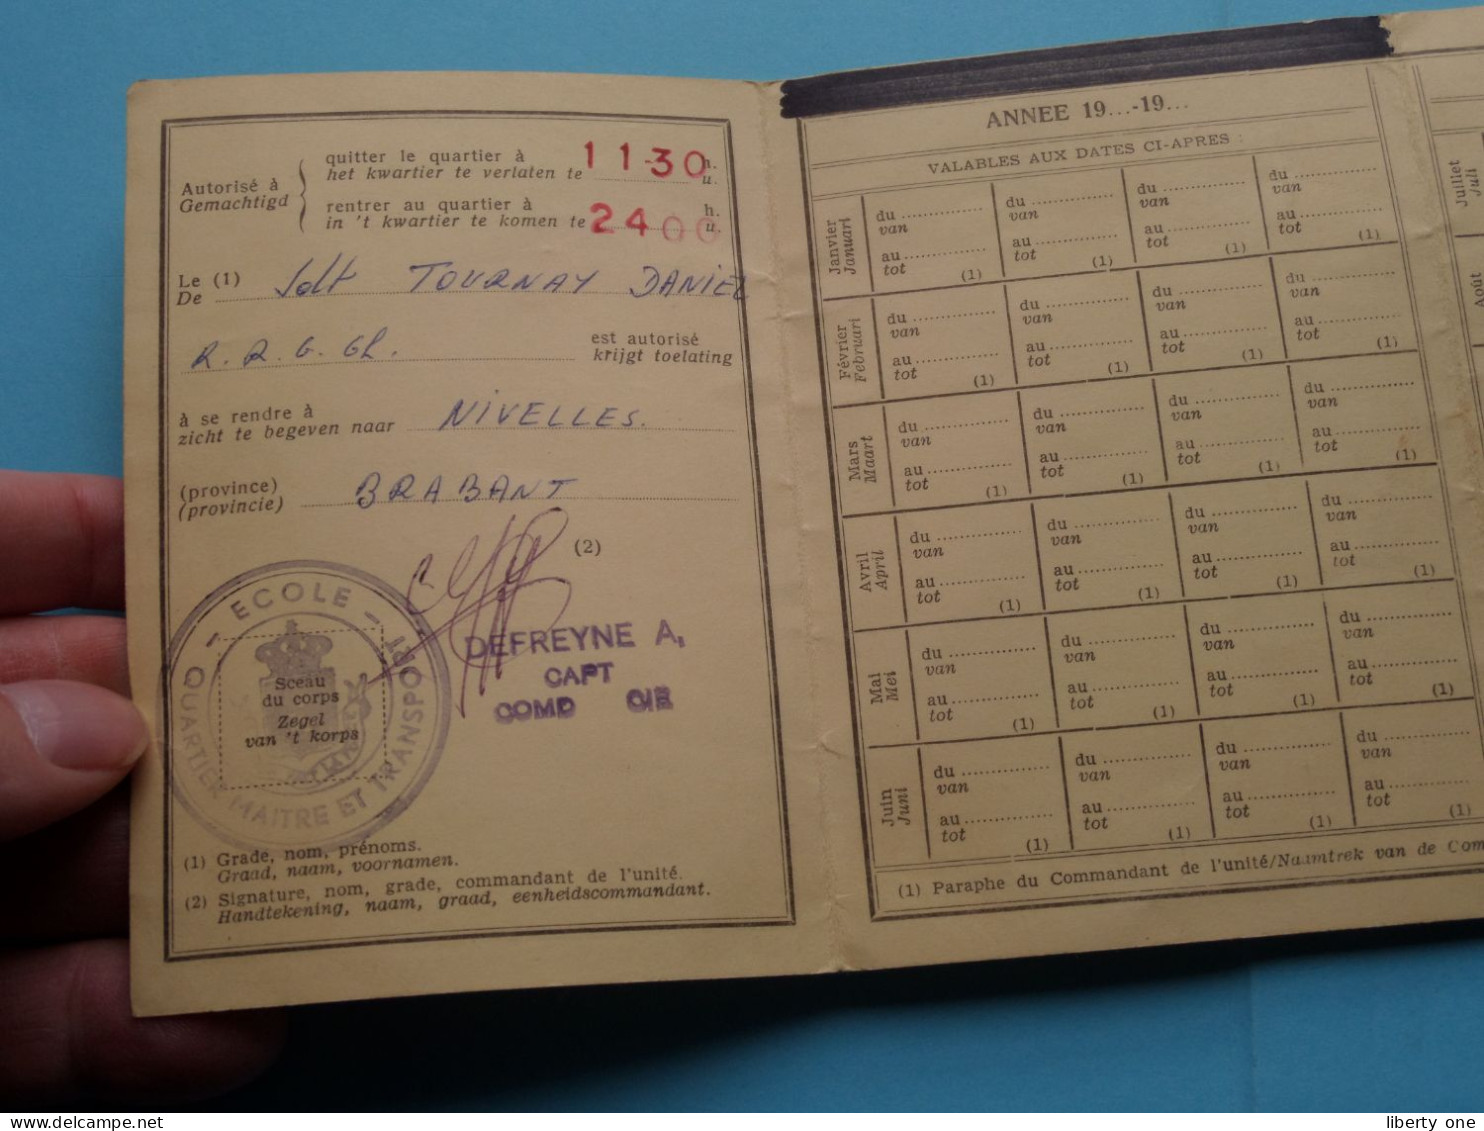 GUNSTVERLOF- En VERGUNNINGSKAART 66/37891 Nivelle ( Tournay ) 1966 ( See/Zie/voir > Scans ) ! - Dokumente